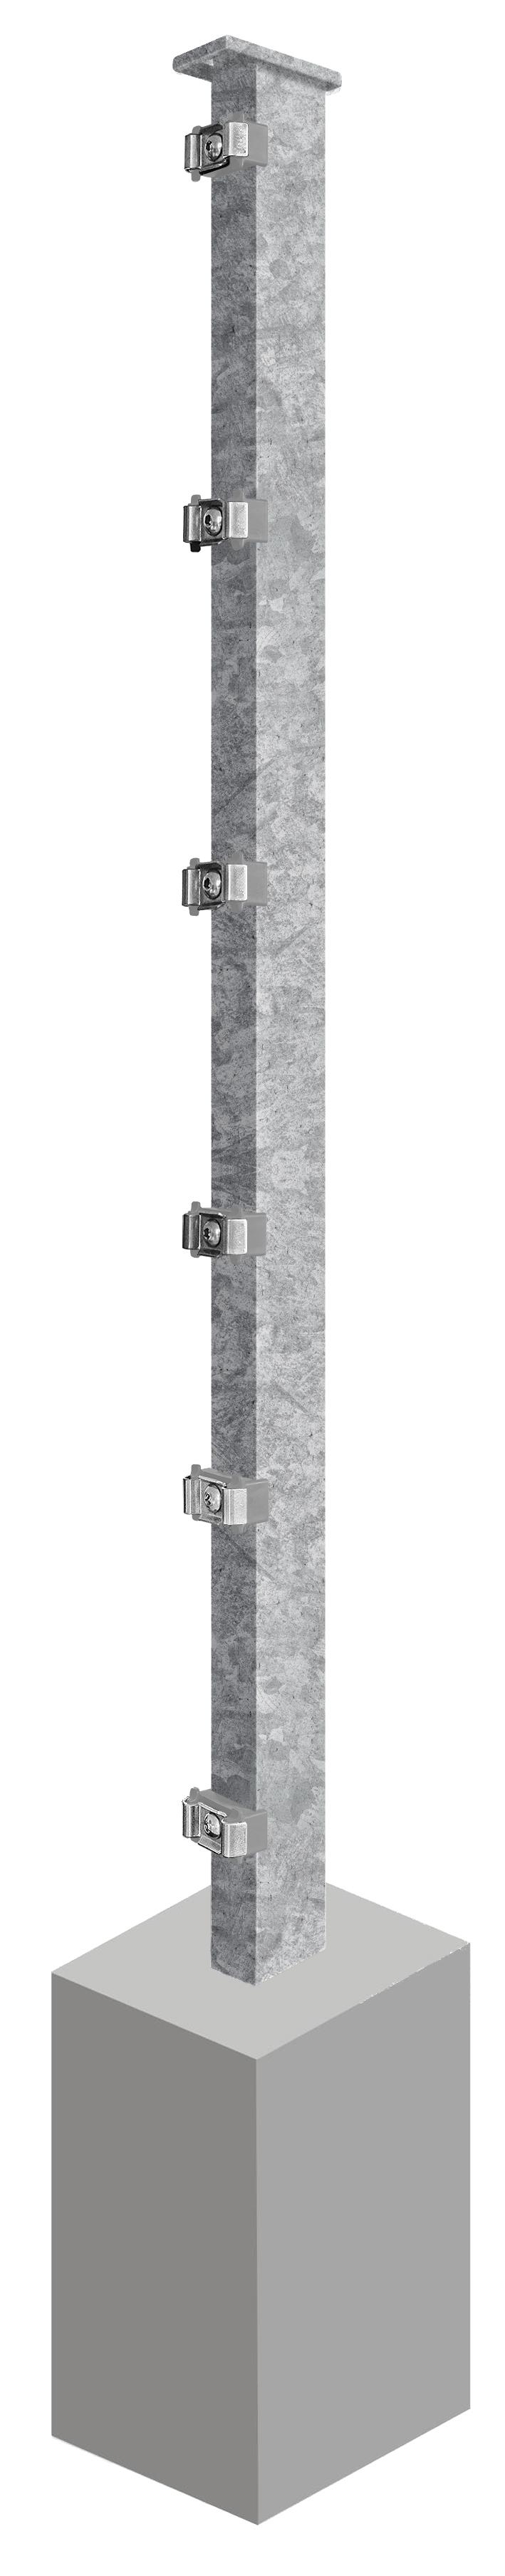 Pfosten System AC-Typ PSLF, für Zaunhöhe 1.430 mm